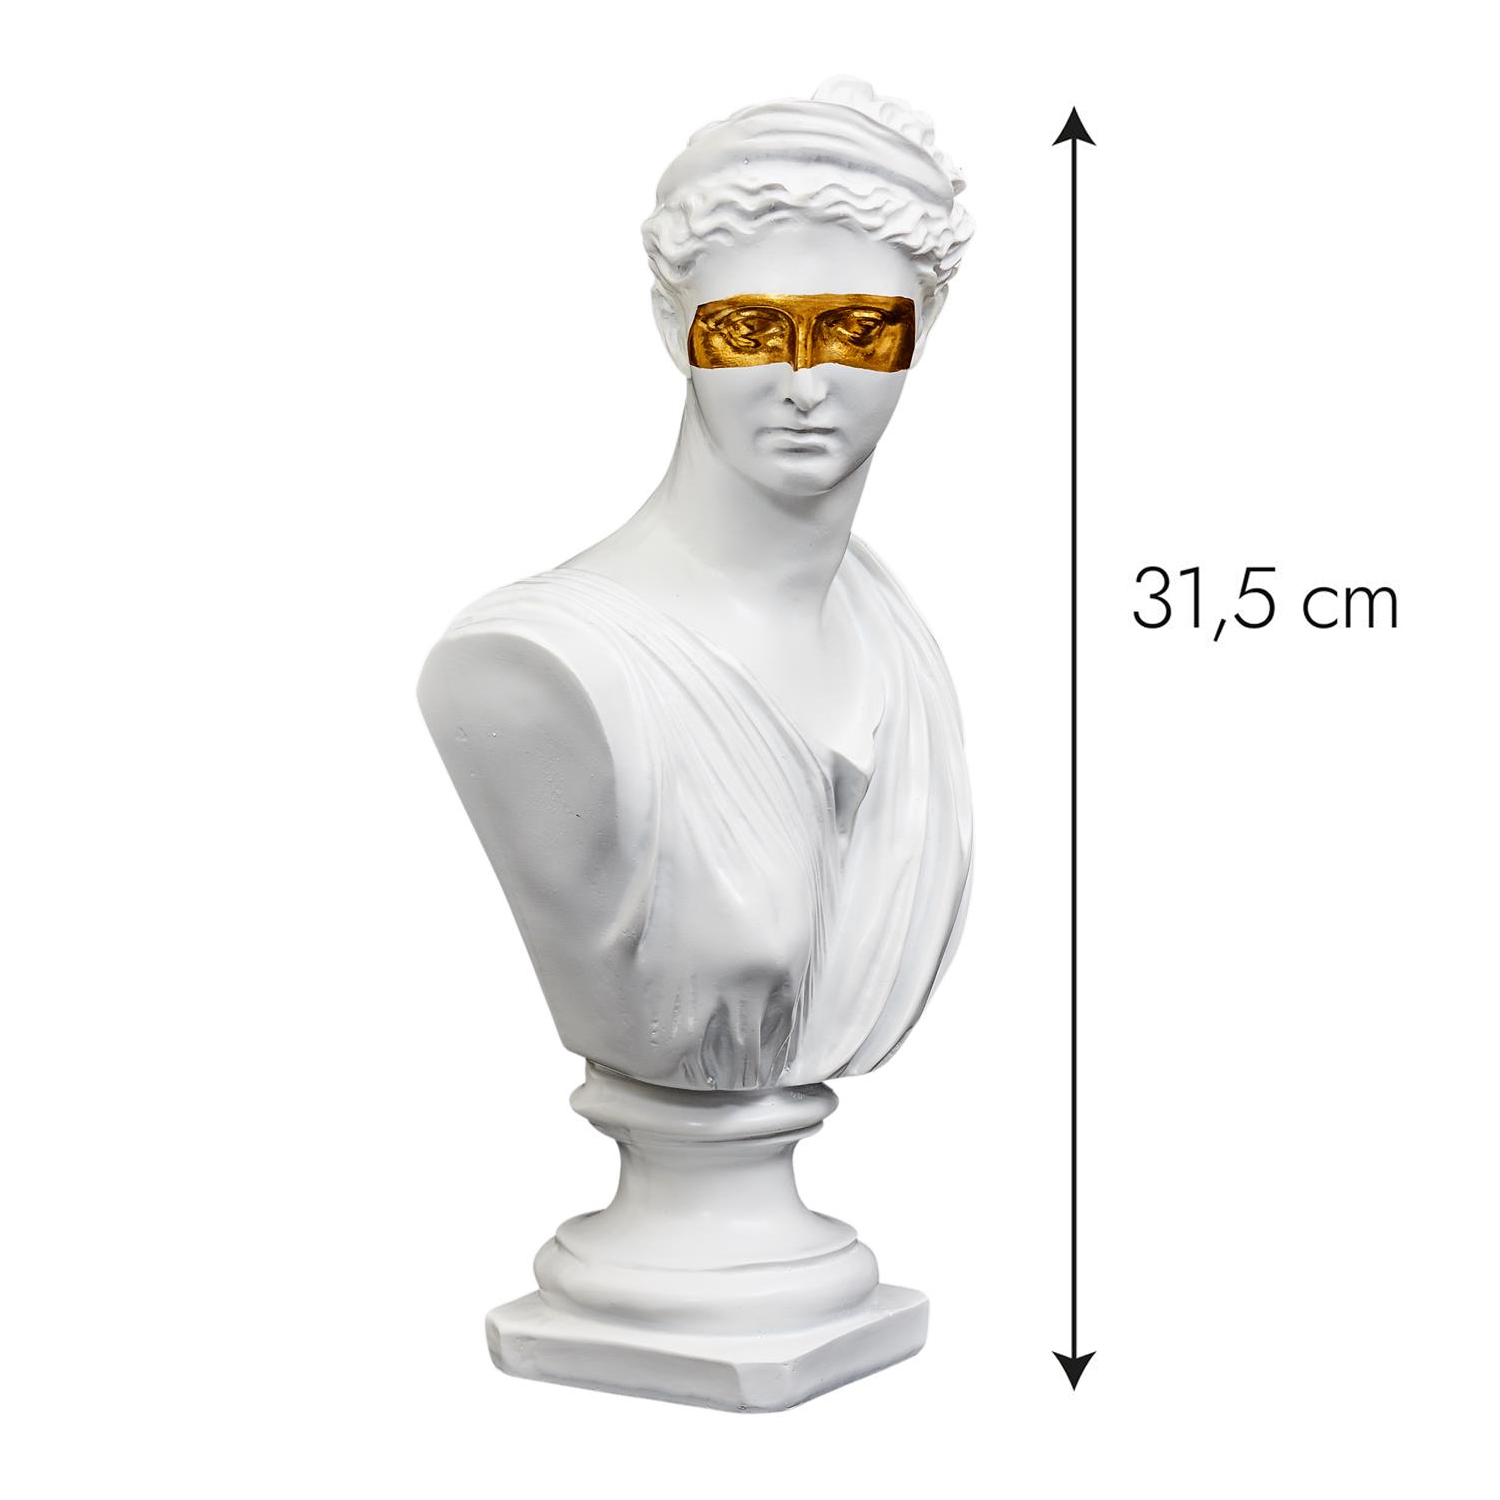 Statut buste decoratif resine deco blanc or figure original masque dore royal femme homme grec art monde sculpture grecque figurine decoration mannequin socle contemporain